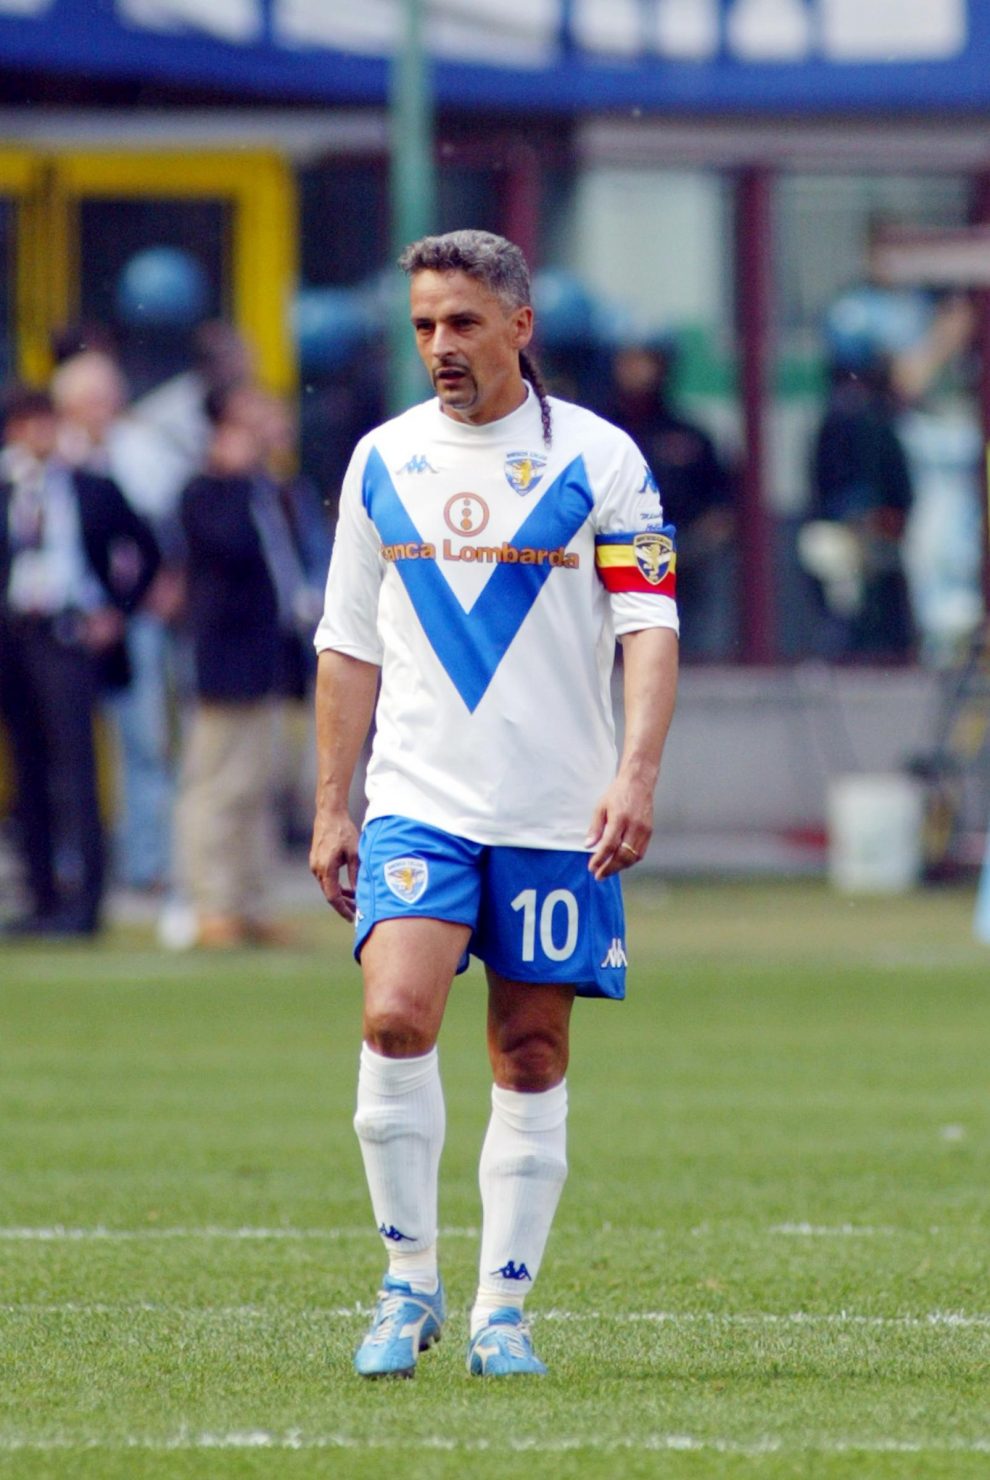 Roberto Baggio – la carriera